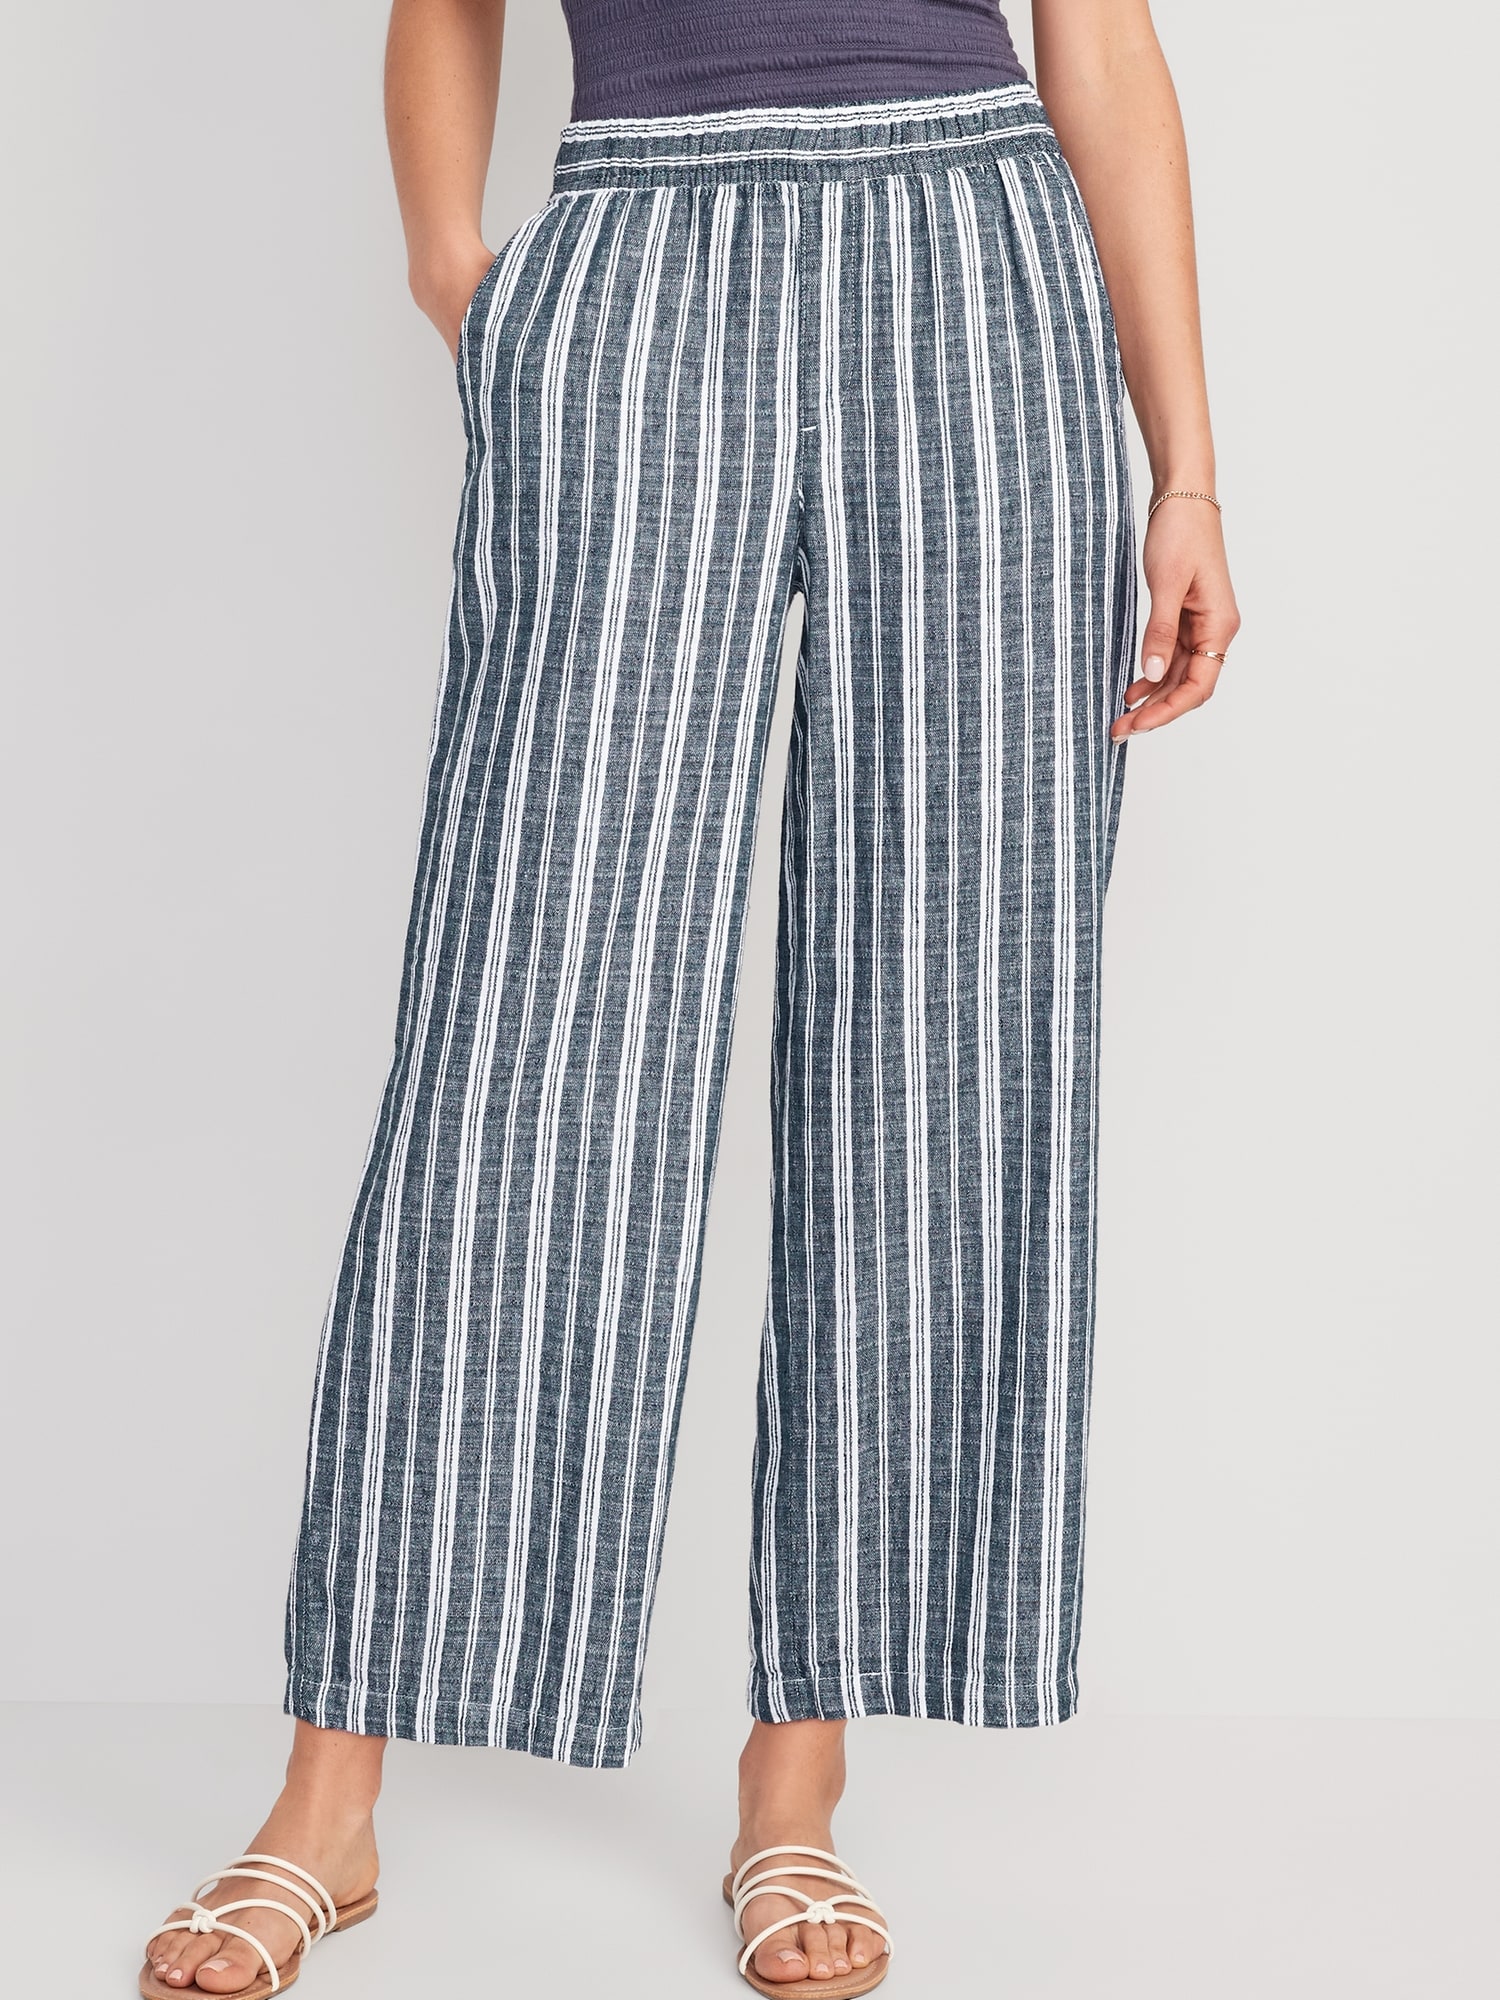 Old Navy, Pants & Jumpsuits, Ladies Size 4 Side Zipper Elastic Waist Pants